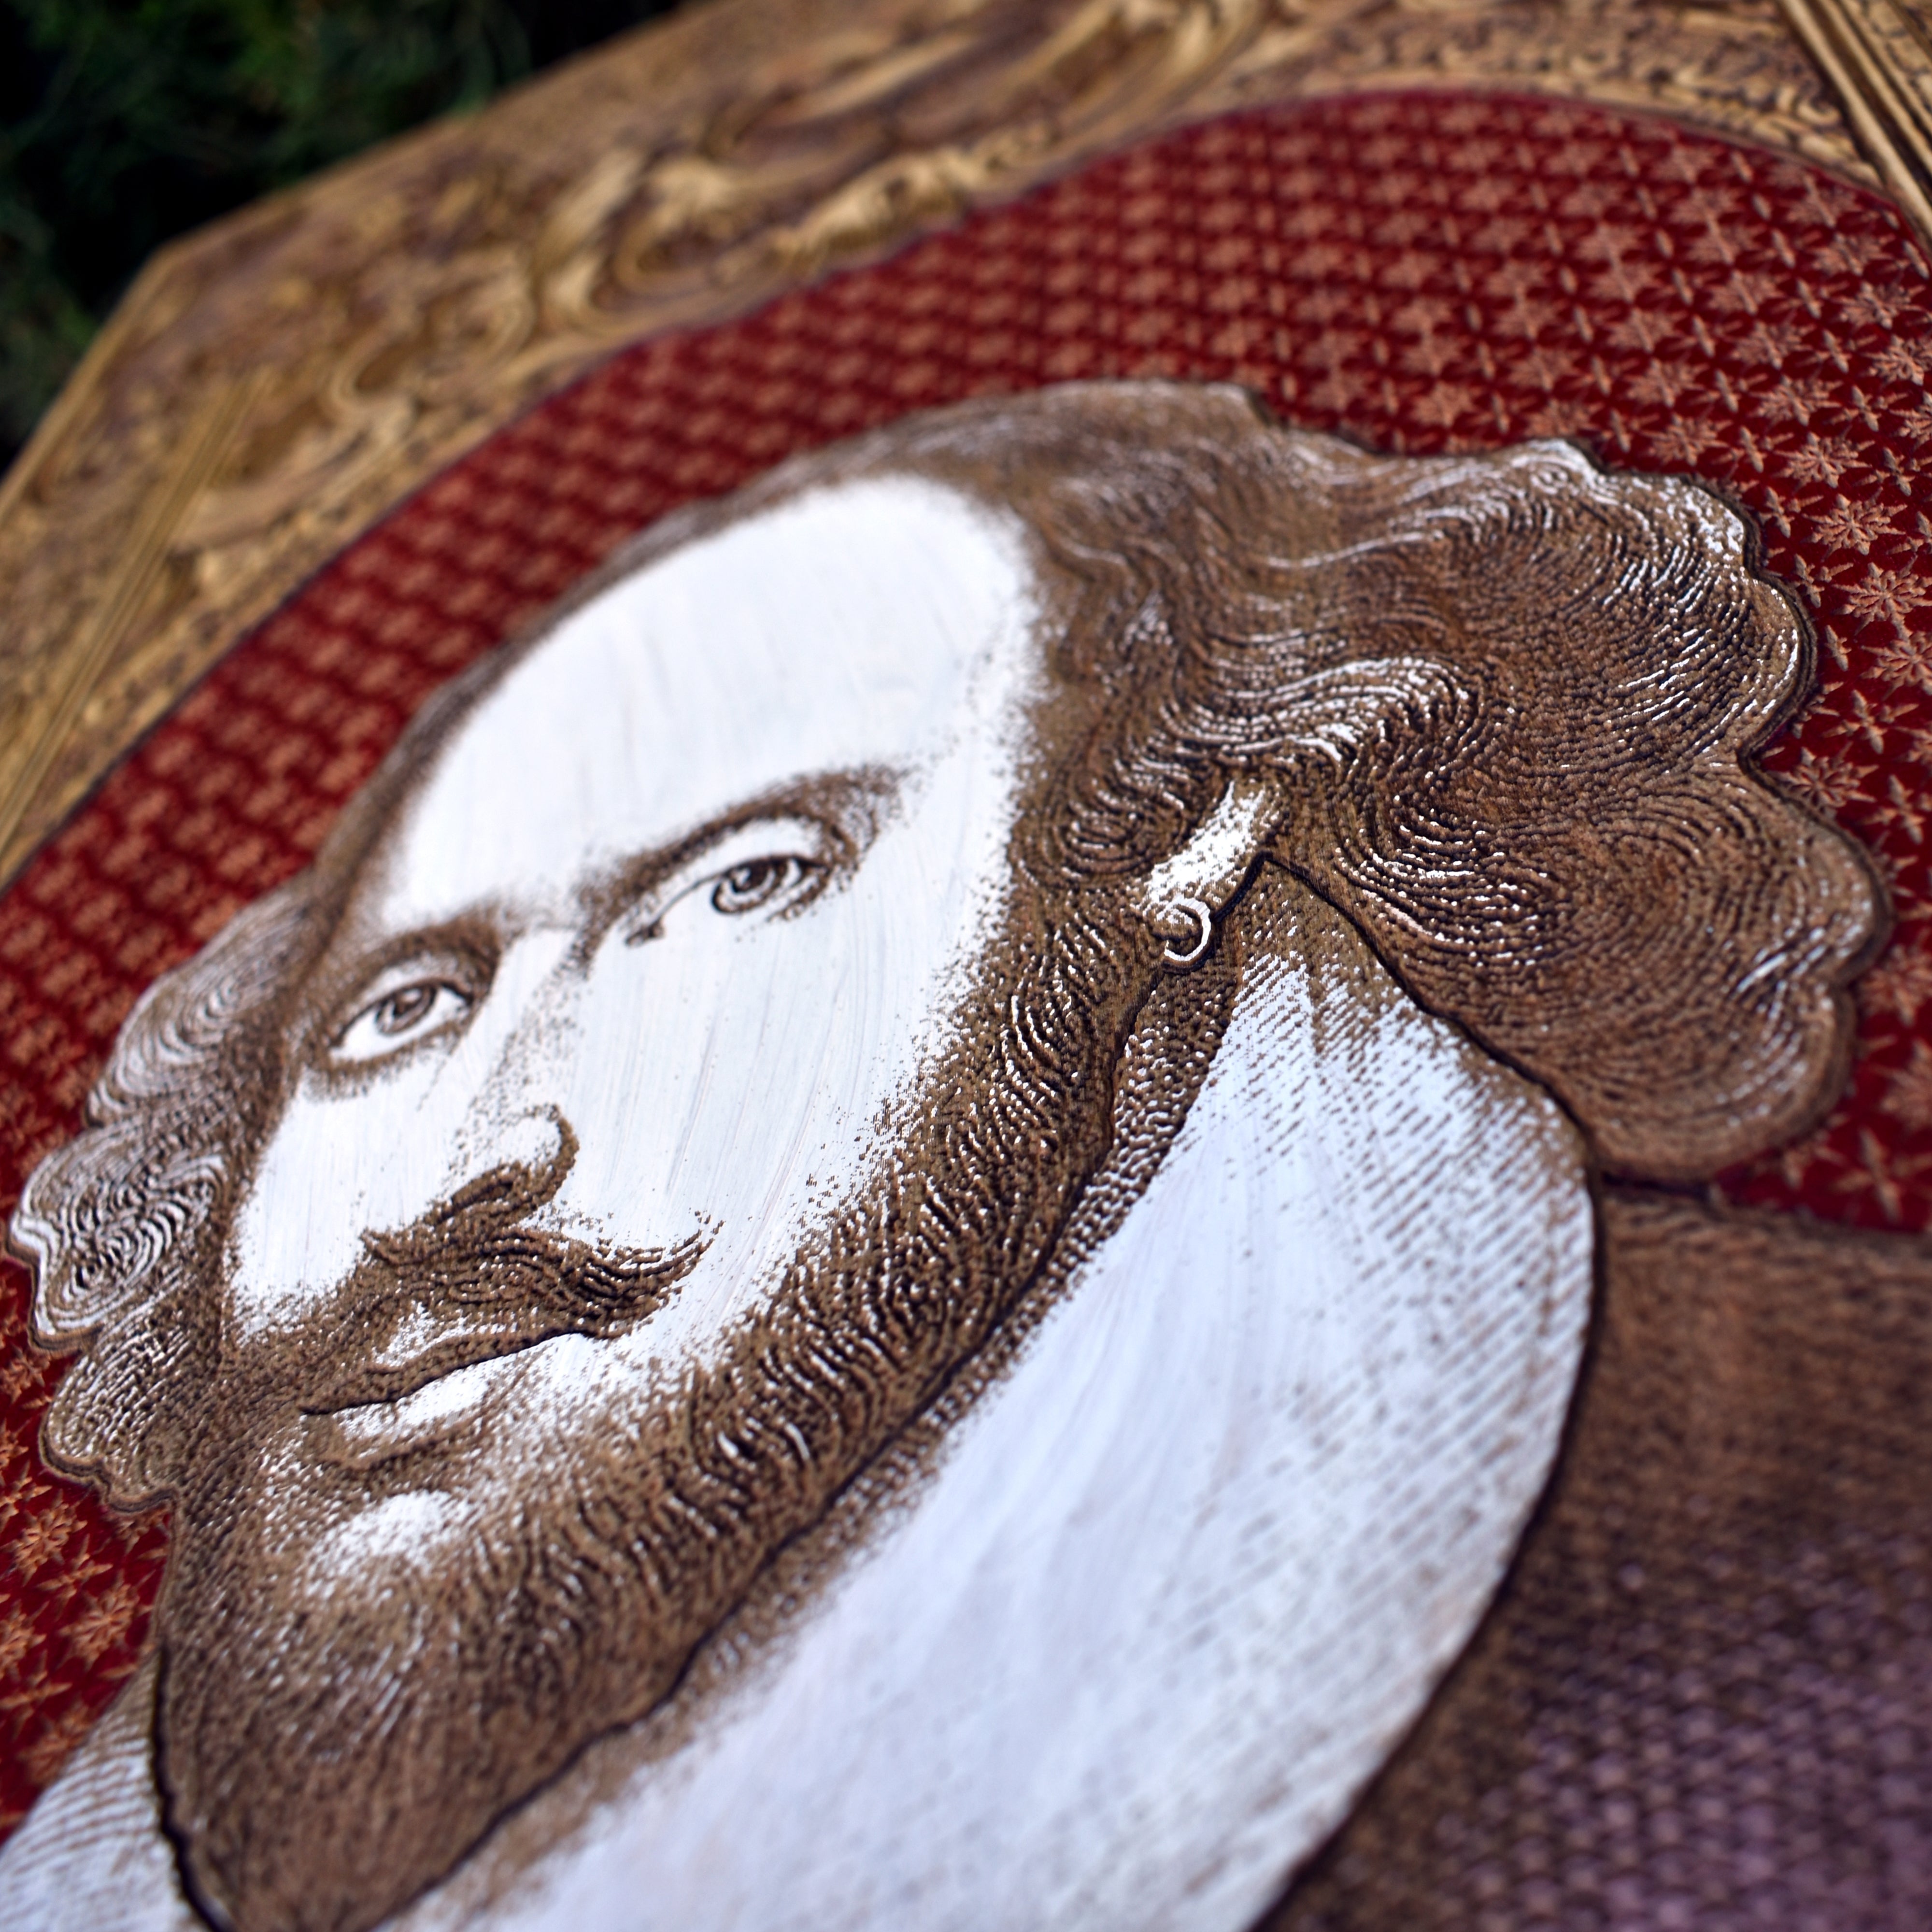 William Shakespeare Portrait - Extra Large